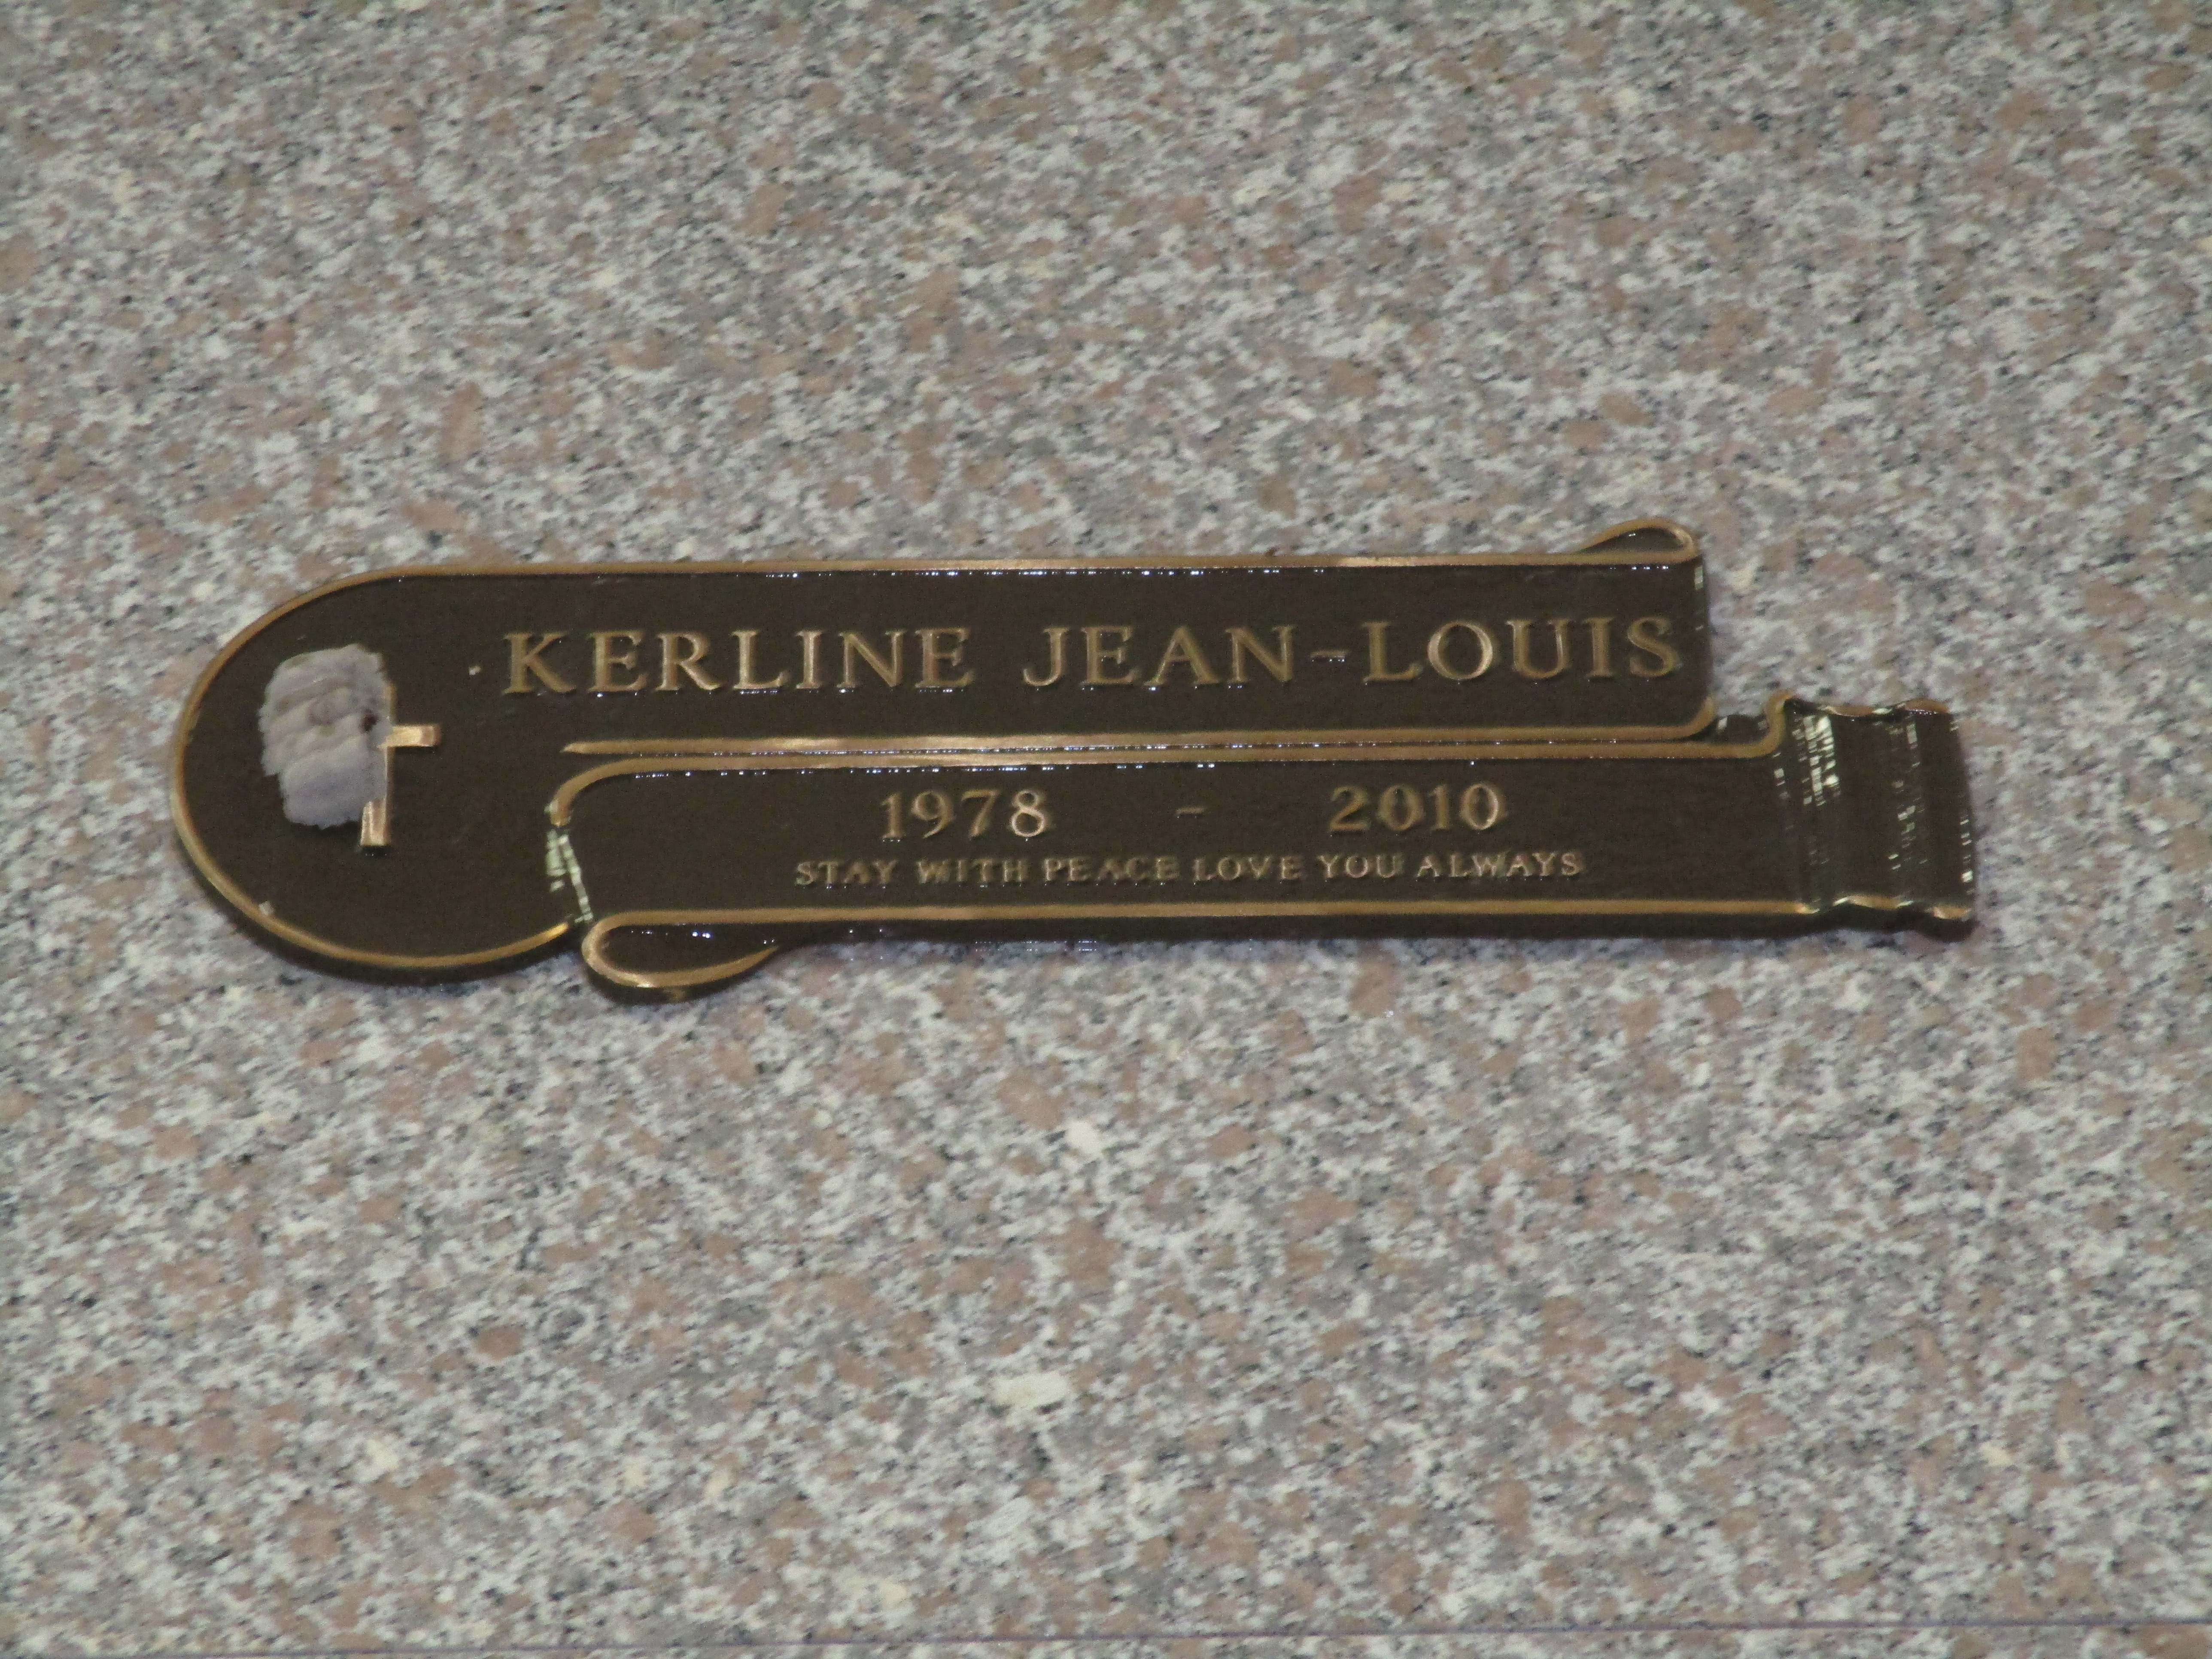 Kerline Jean-Louis